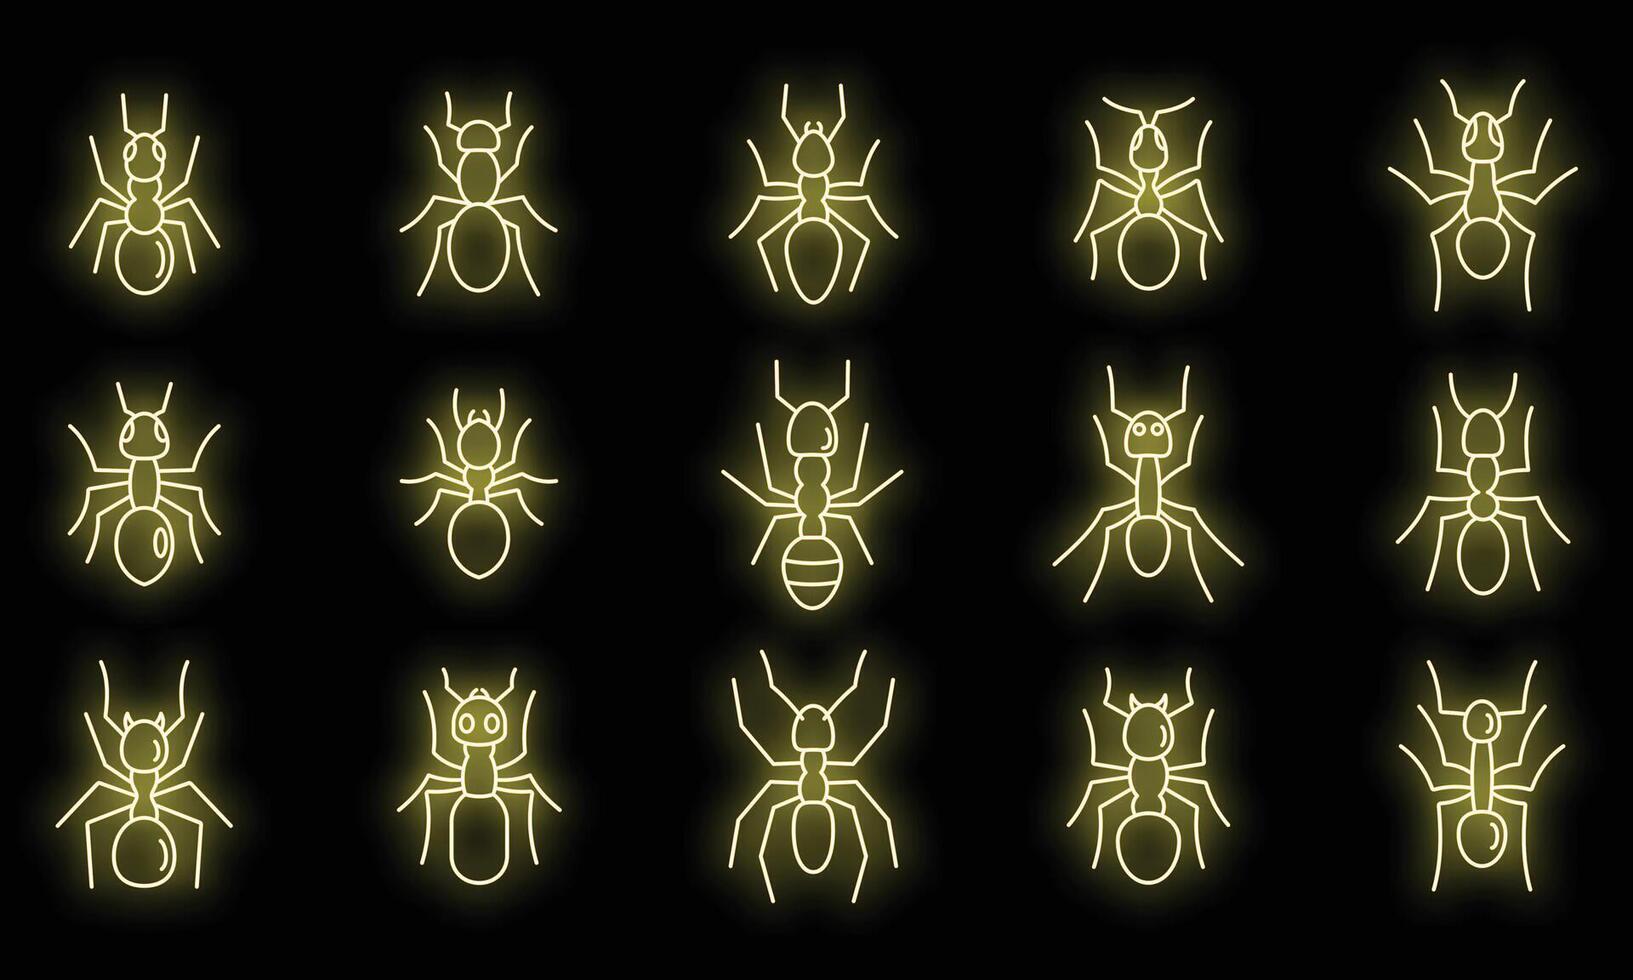 Wild ant icons set vector neon